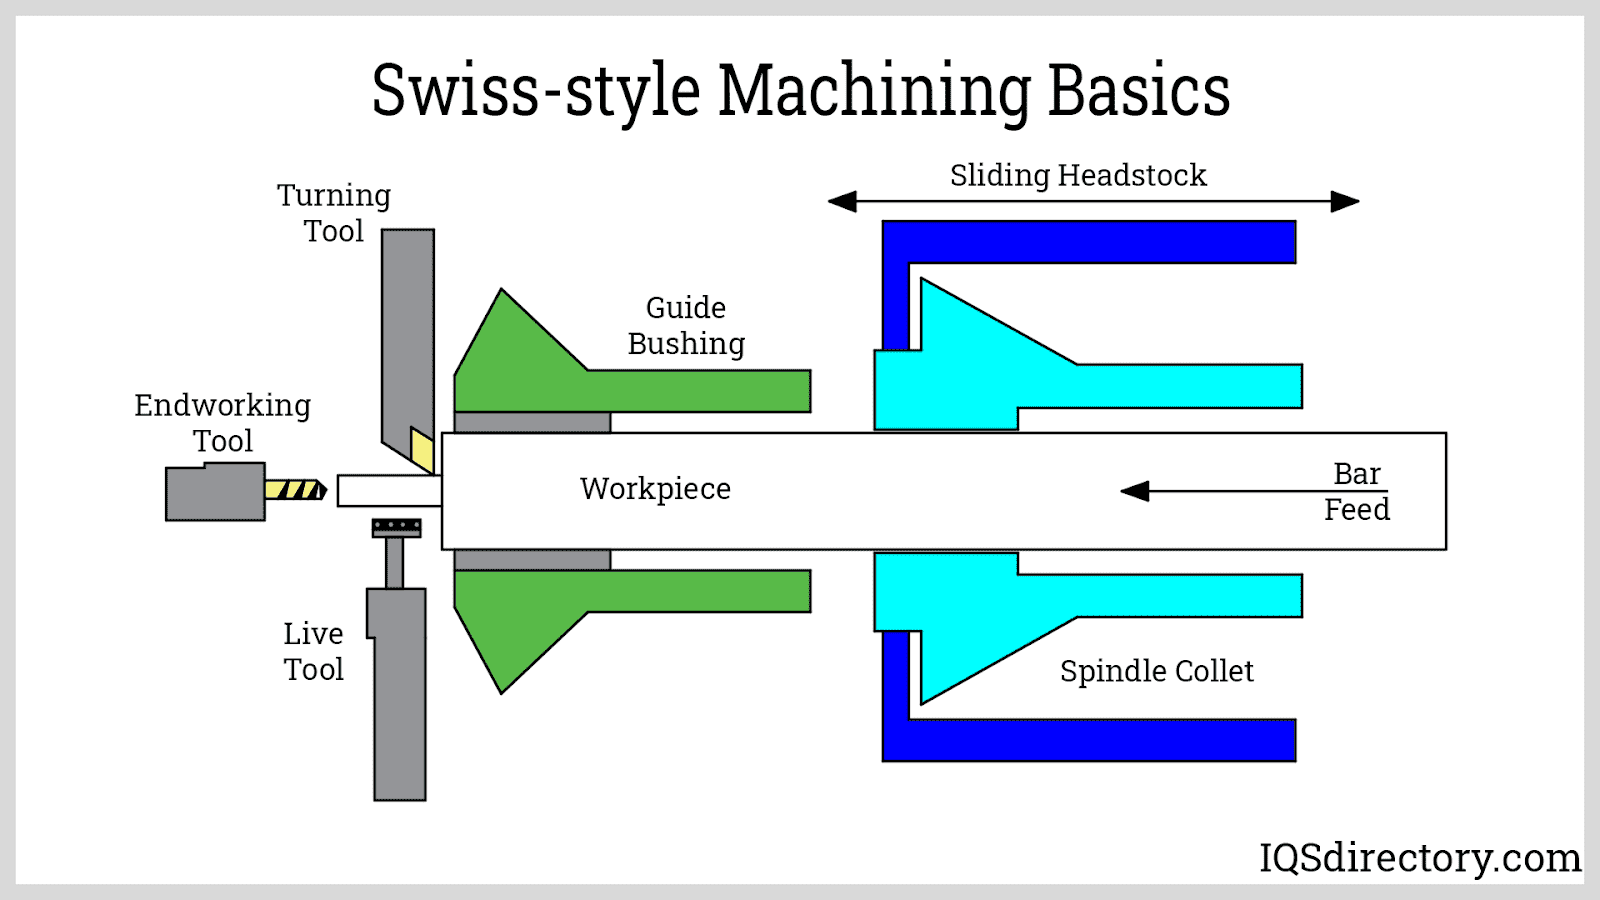 Swiss-style Machining Basics